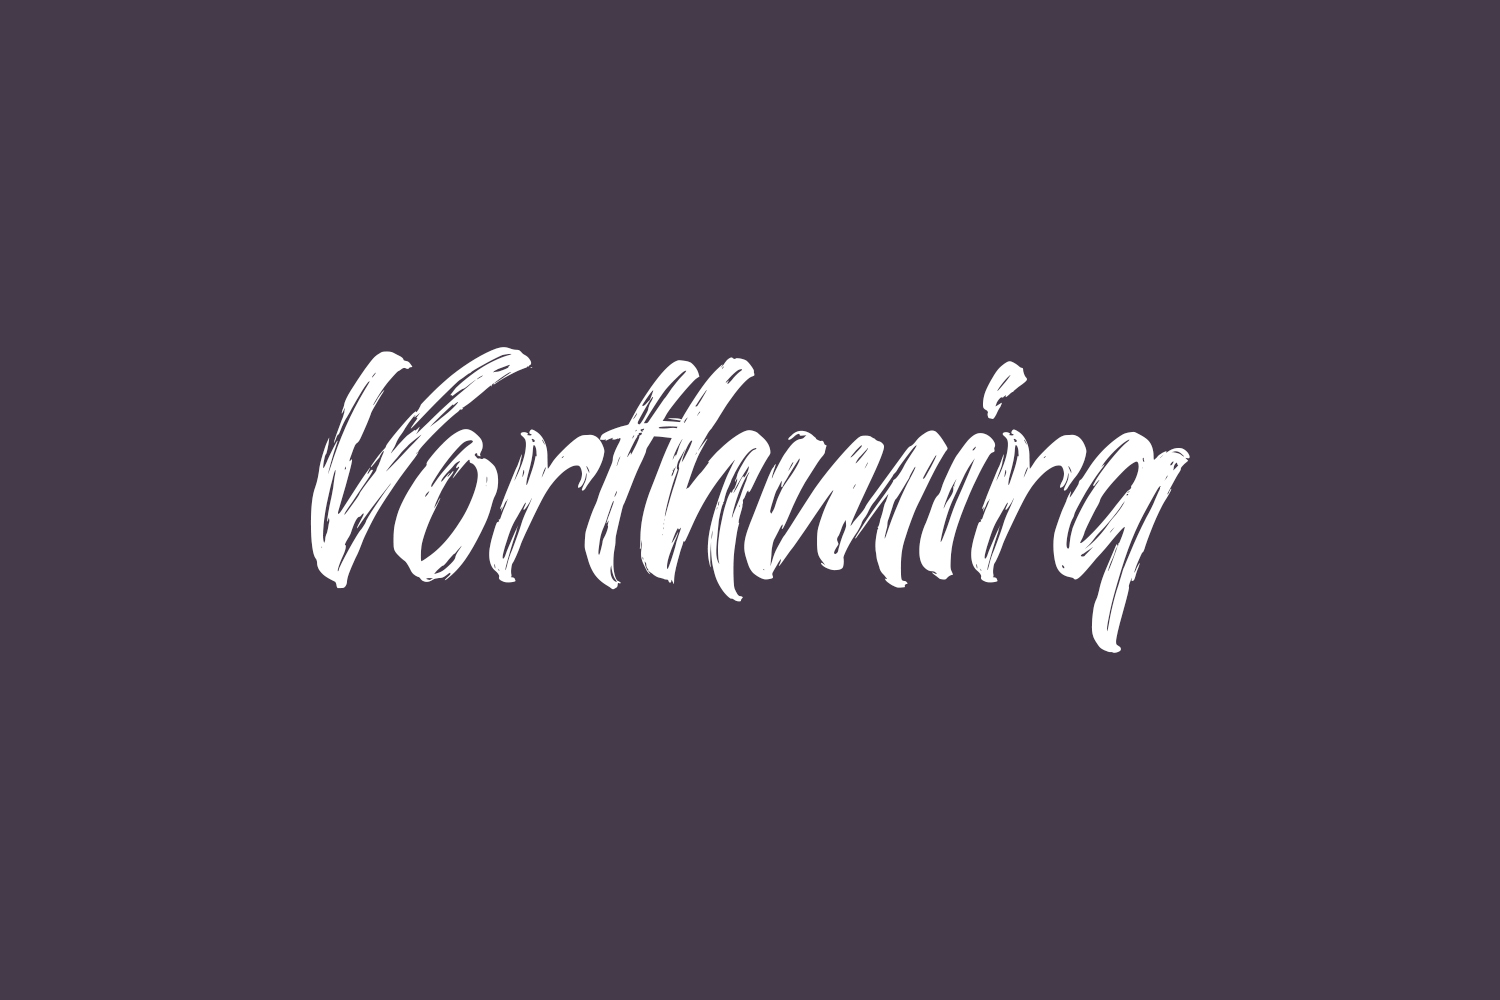 Vorthmirq Free Font